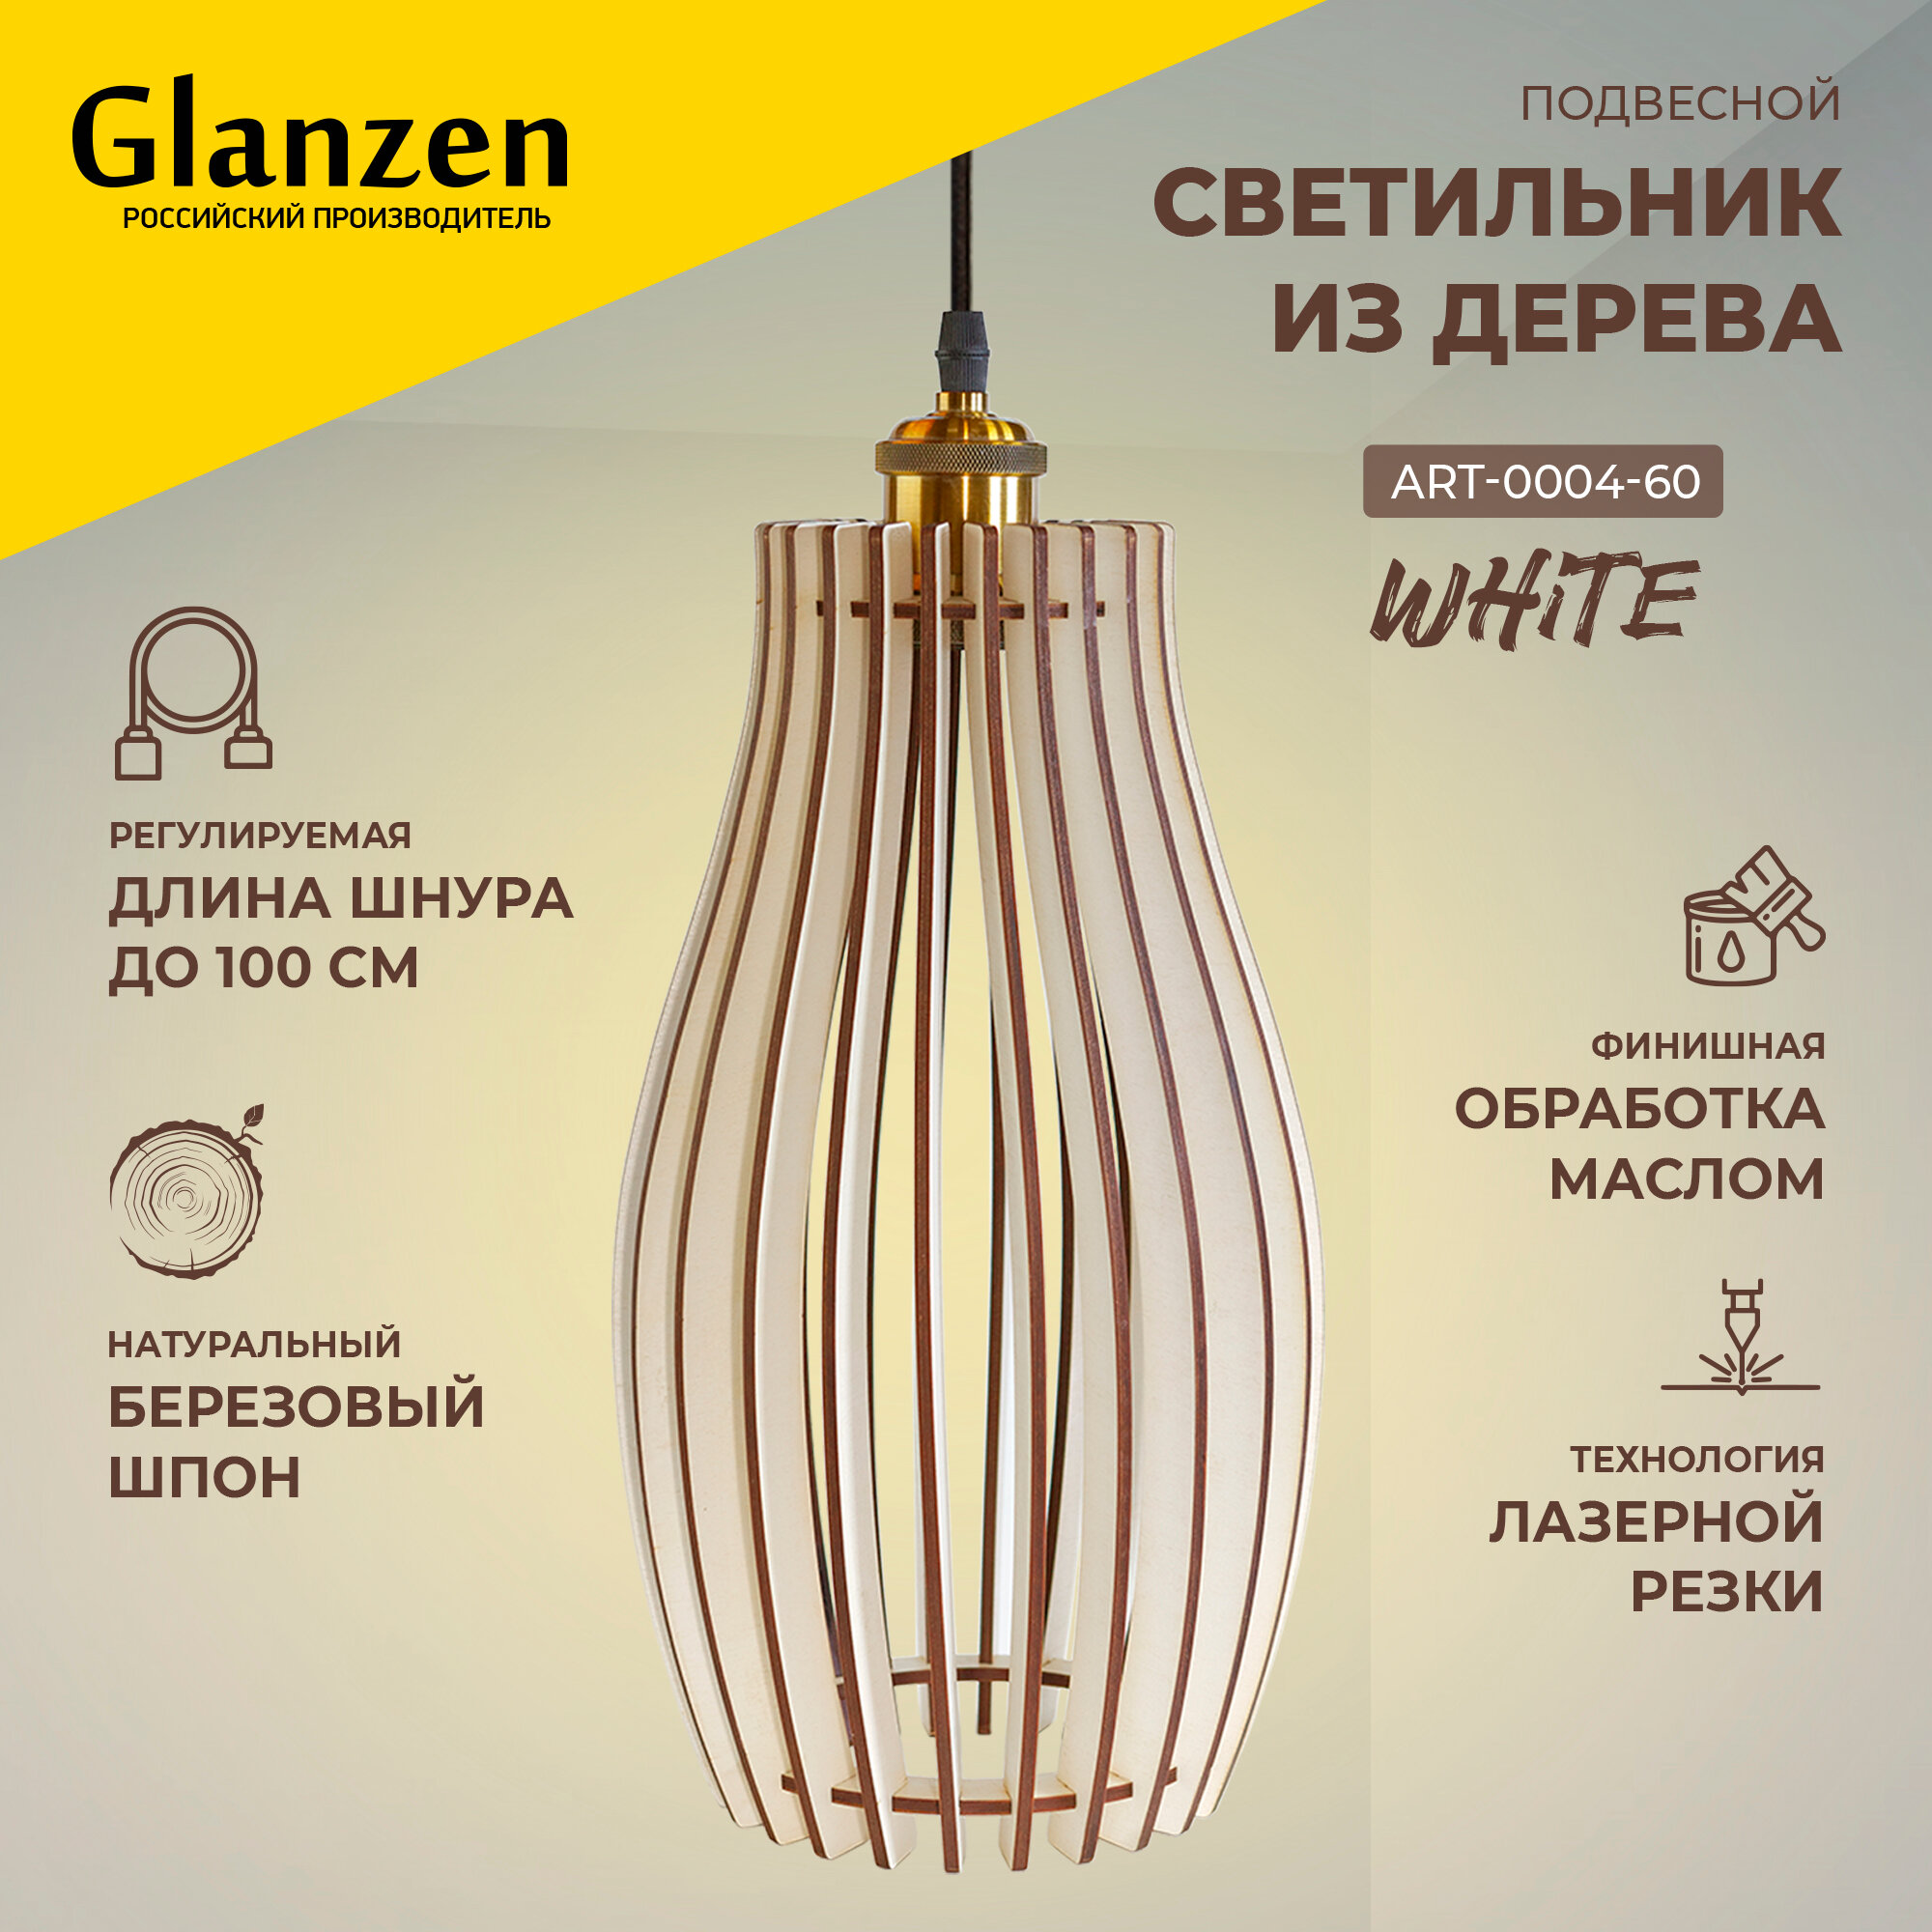 Подвесной светильник из дерева GLANZEN 60Вт ART-0004-60-white